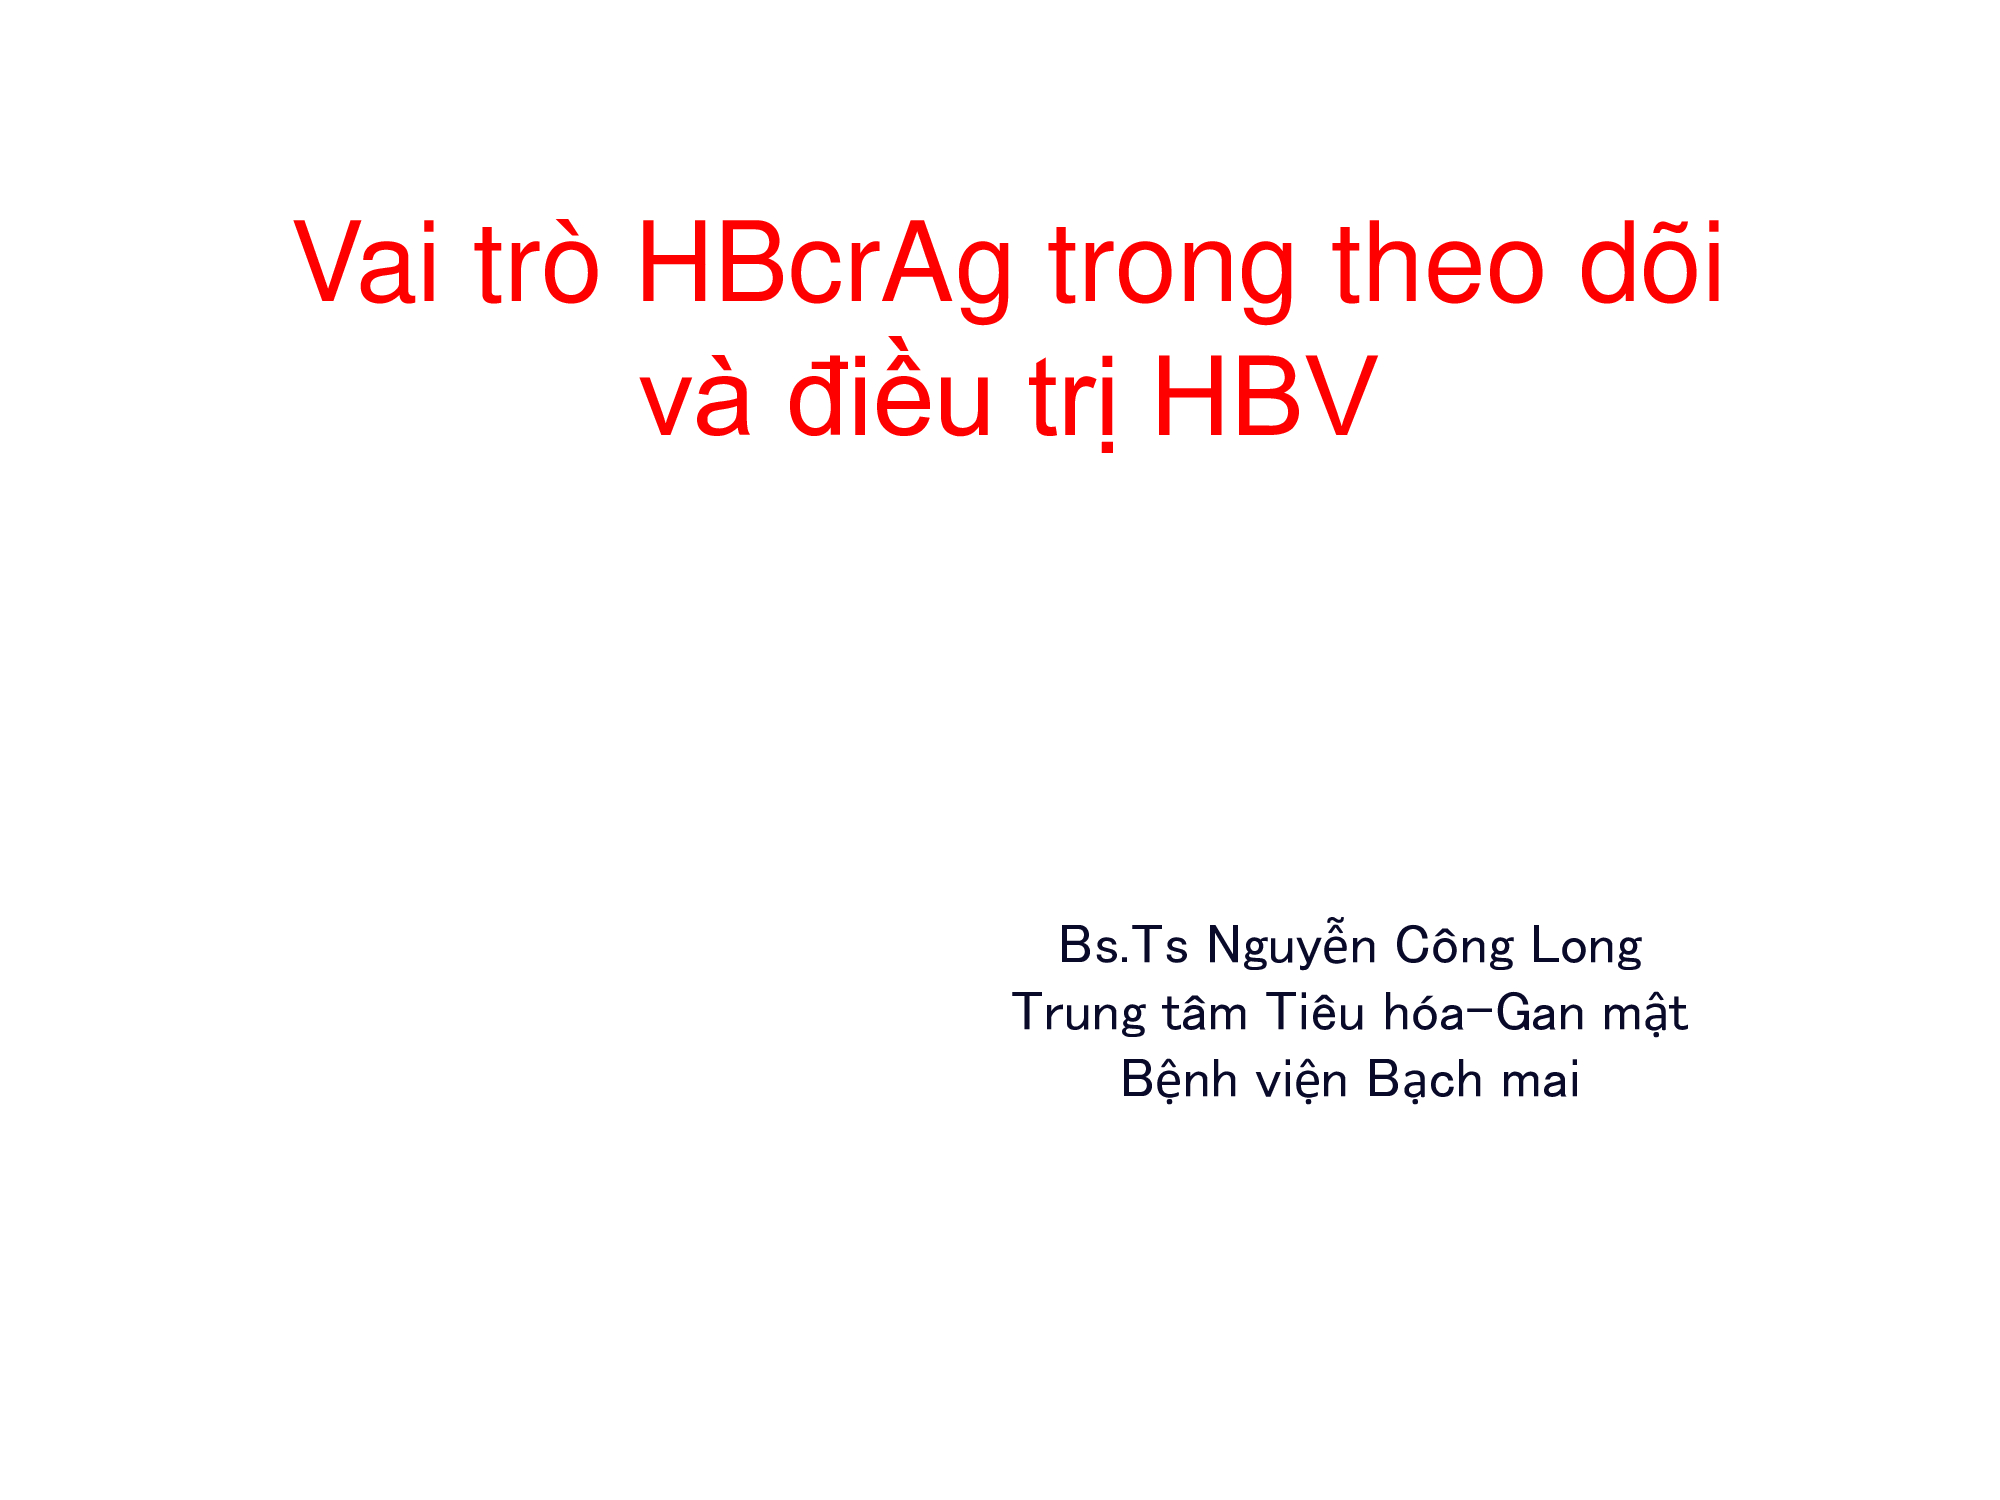 Vai trò HBcrAg trong theo dõi và điều trị HBV